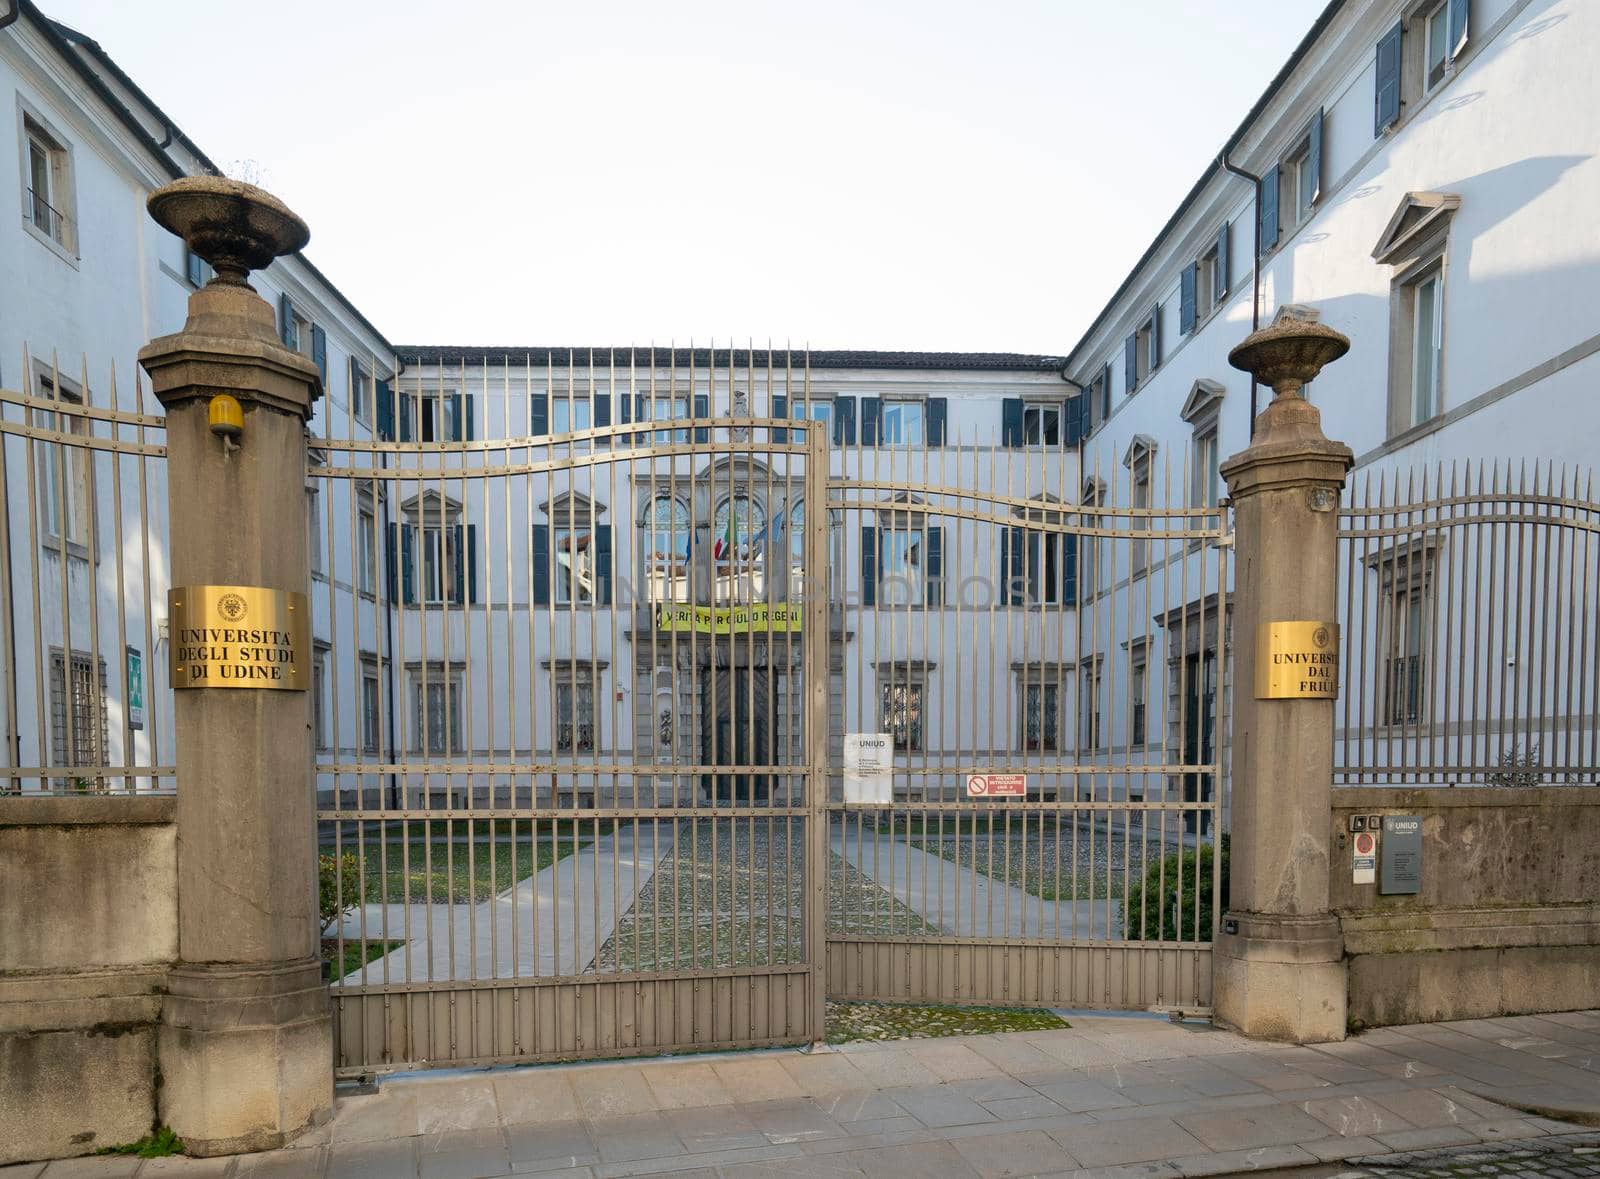 Udine, Italy. February 11, 2020. Antonini palace, seat of the University of Udine